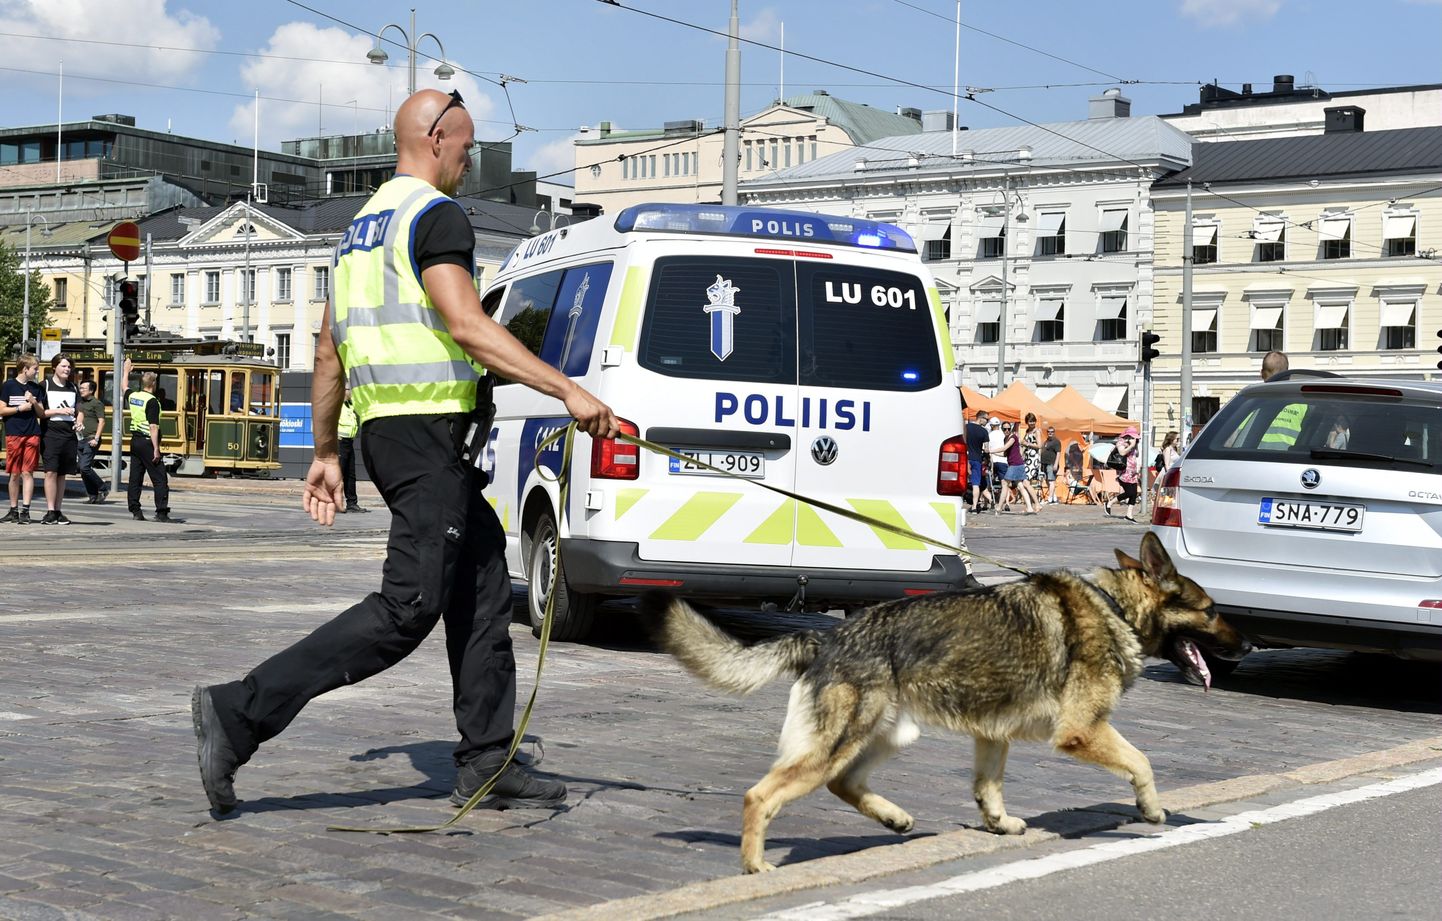 Soome politsei. Foto on illustratiivne